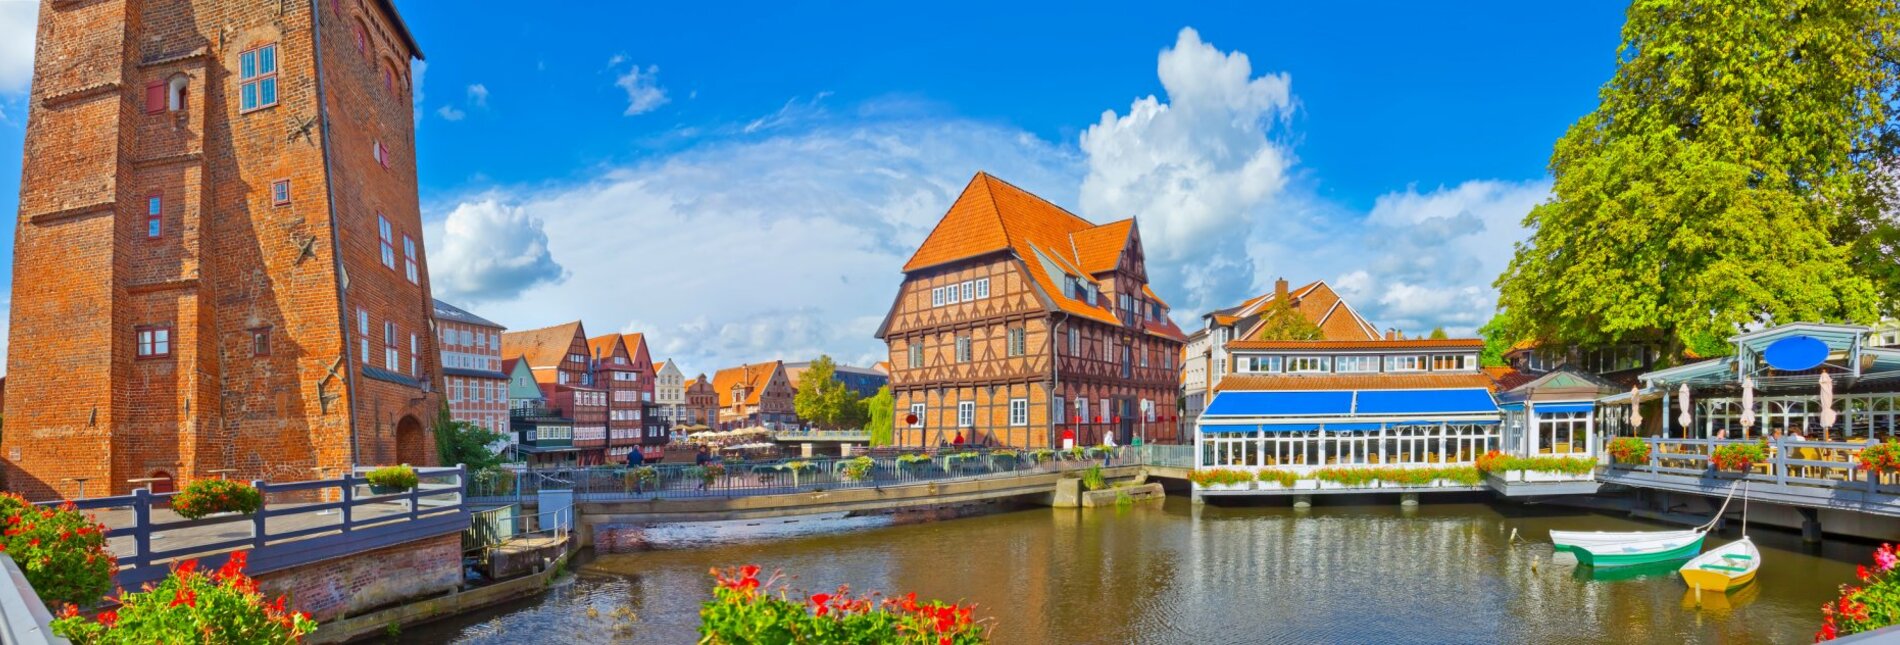 Lüneburger Altstadt am Kanal